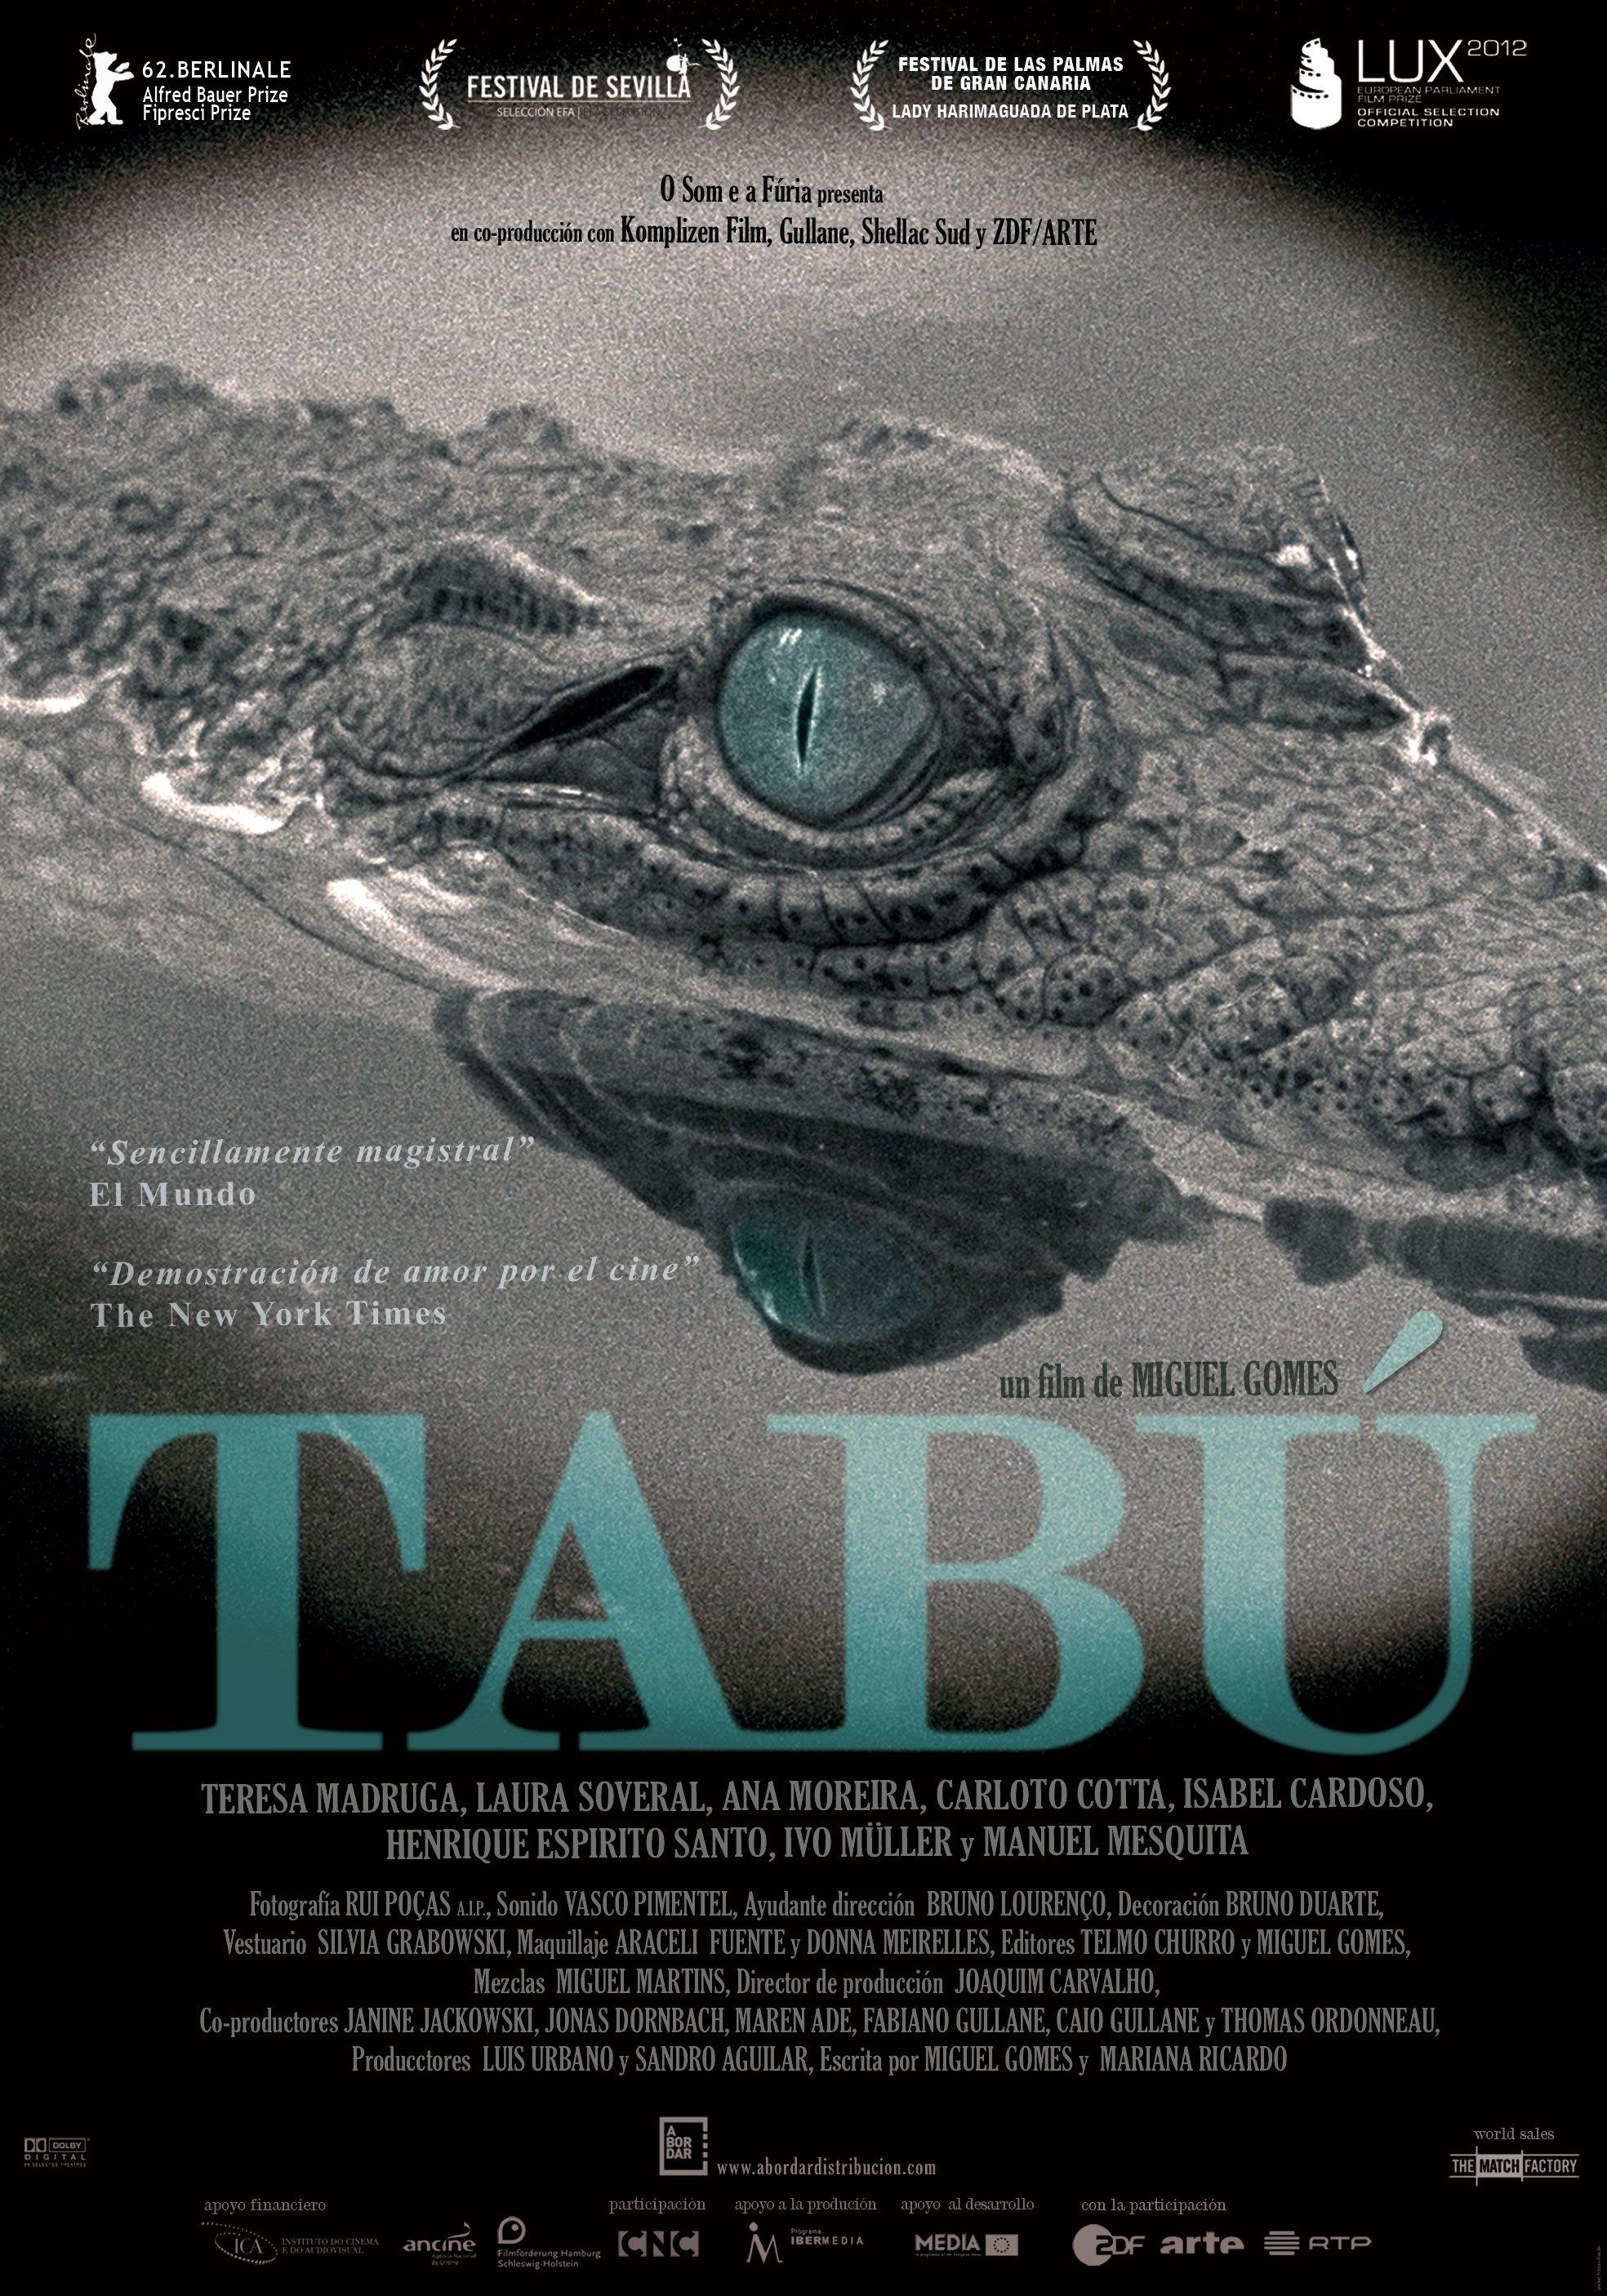 Постер фильма Табу | Tabu